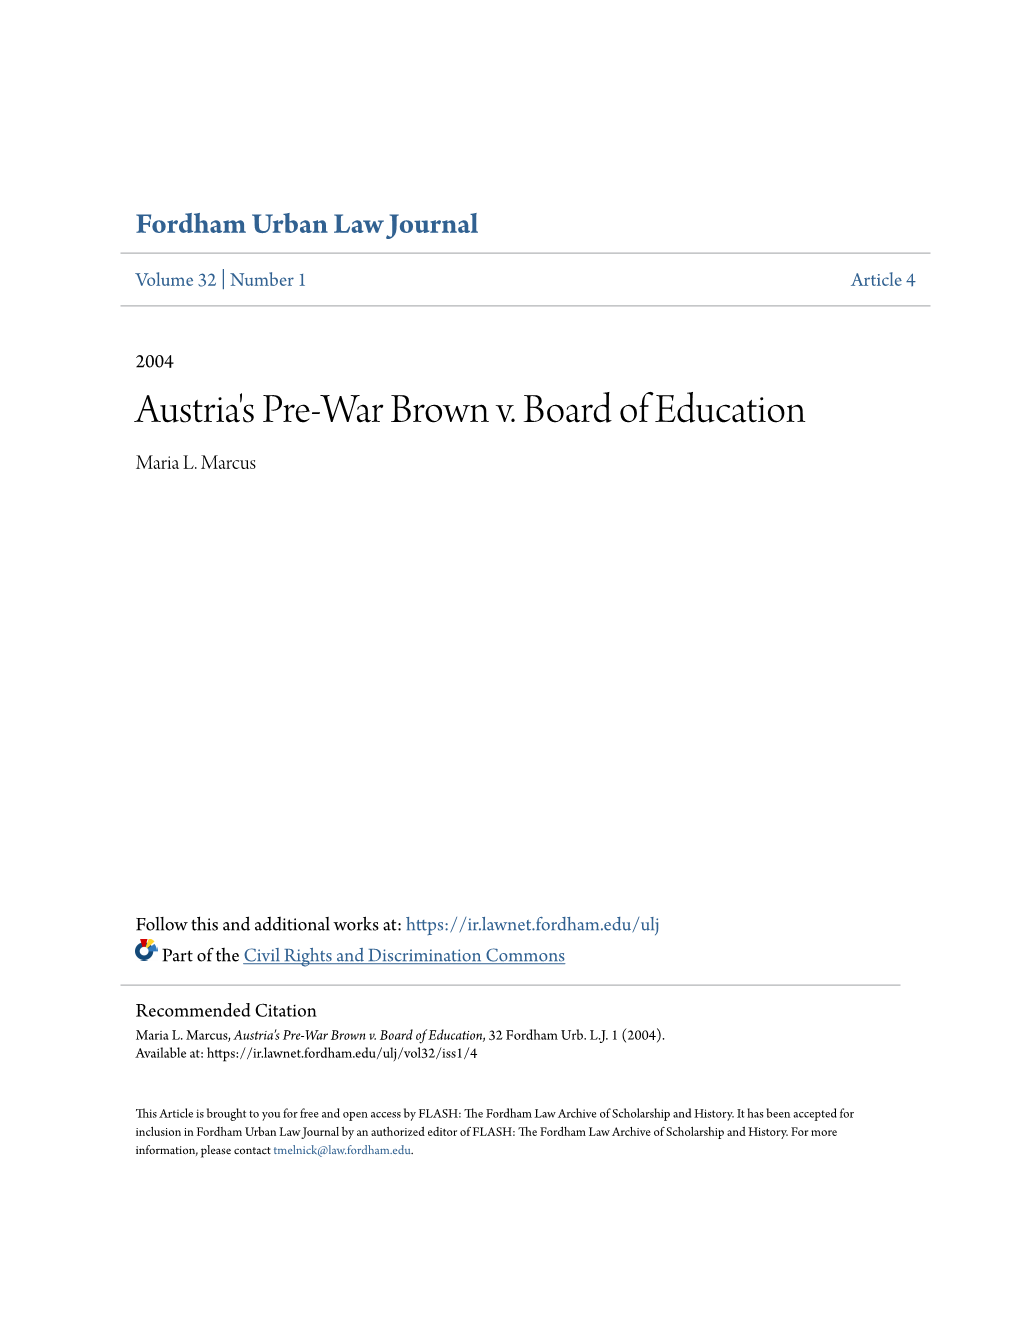 Austria's Pre-War Brown V. Board of Education Maria L